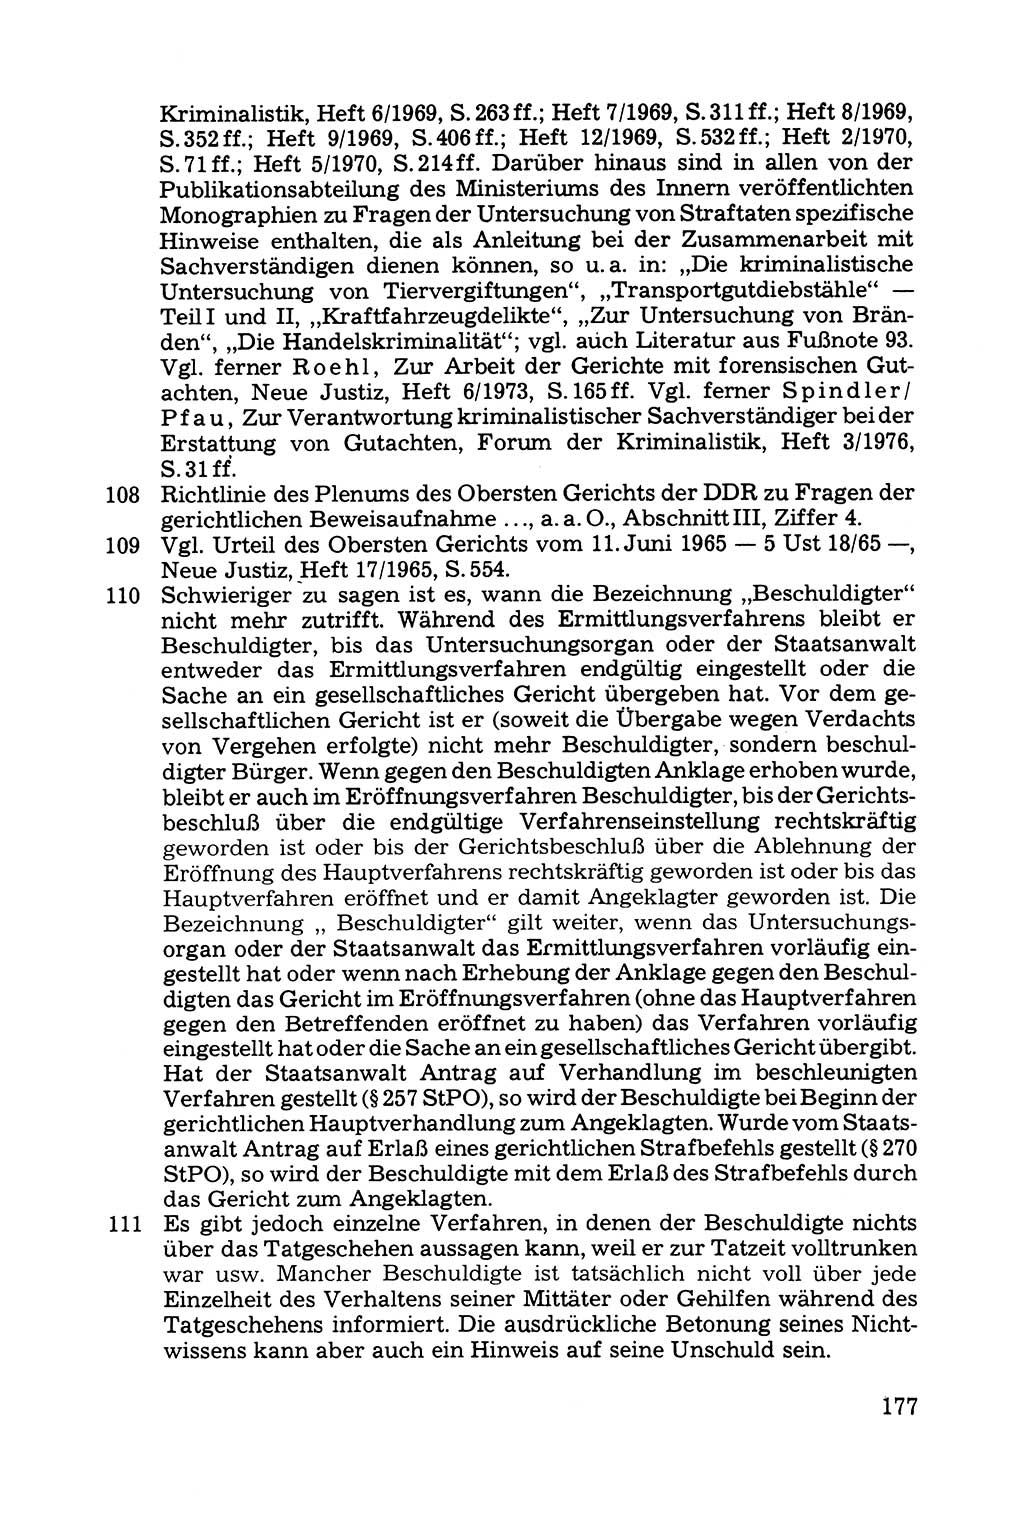 Grundfragen der Beweisführung im Ermittlungsverfahren [Deutsche Demokratische Republik (DDR)] 1980, Seite 177 (Bws.-Fhrg. EV DDR 1980, S. 177)